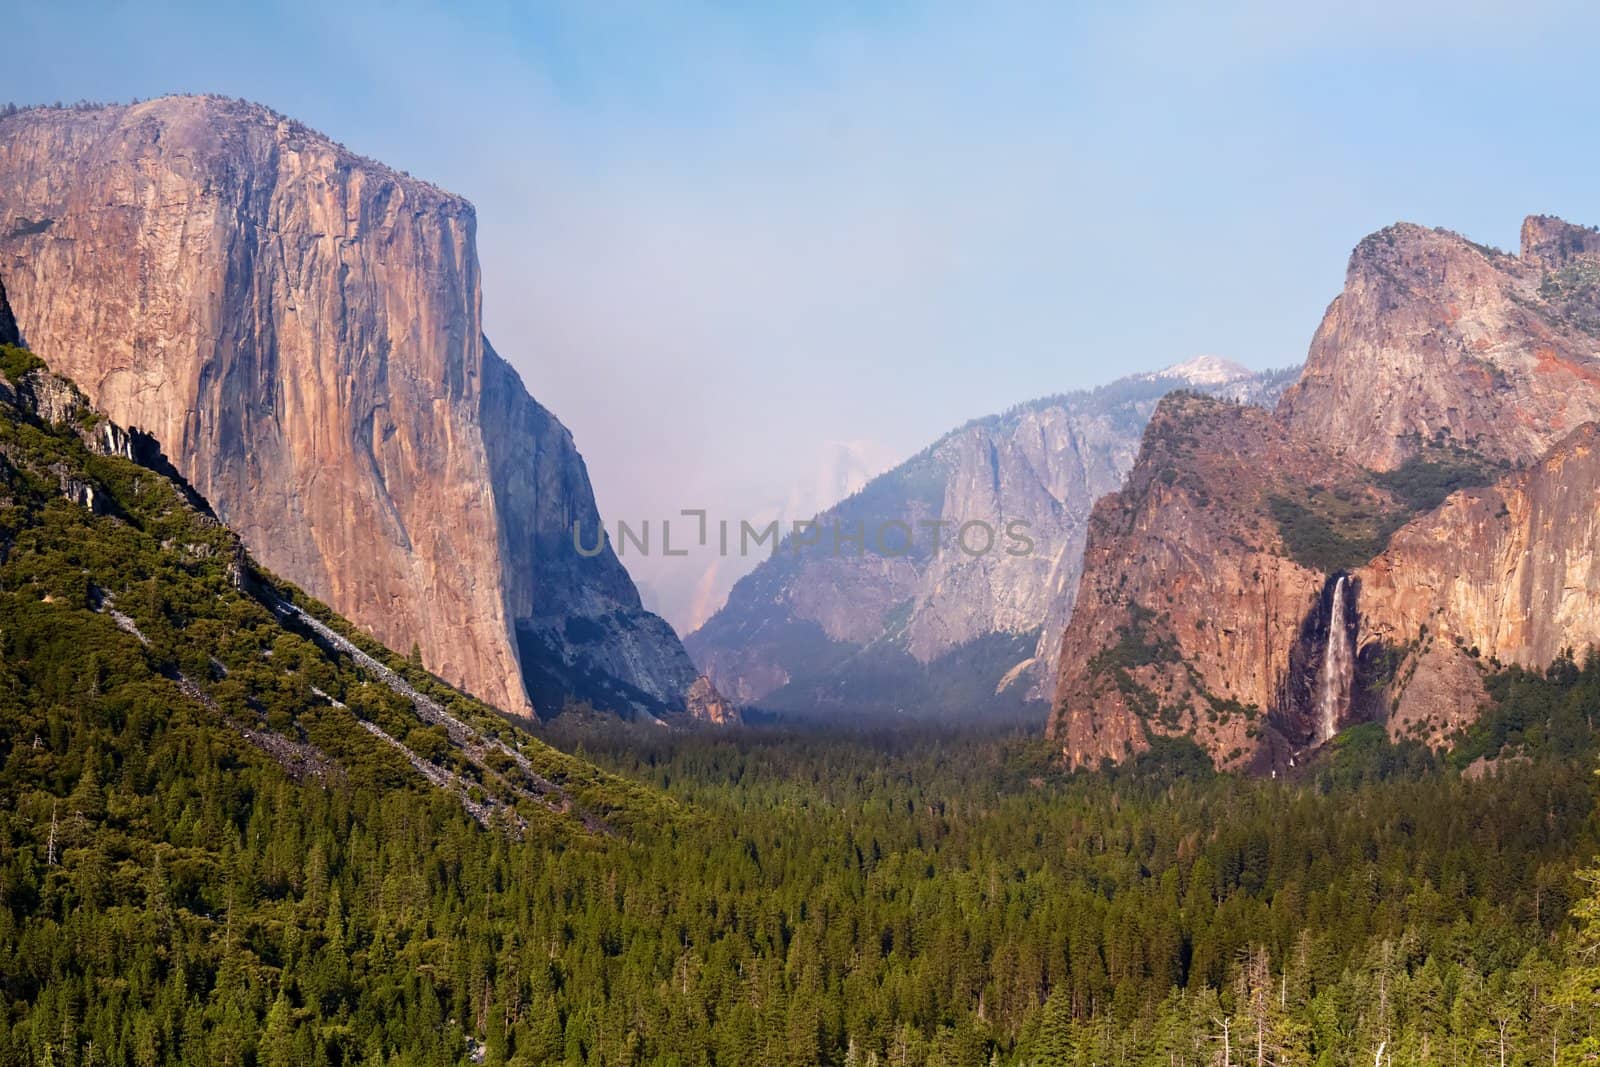 El Capitan, Yosemite Valley by LoonChild